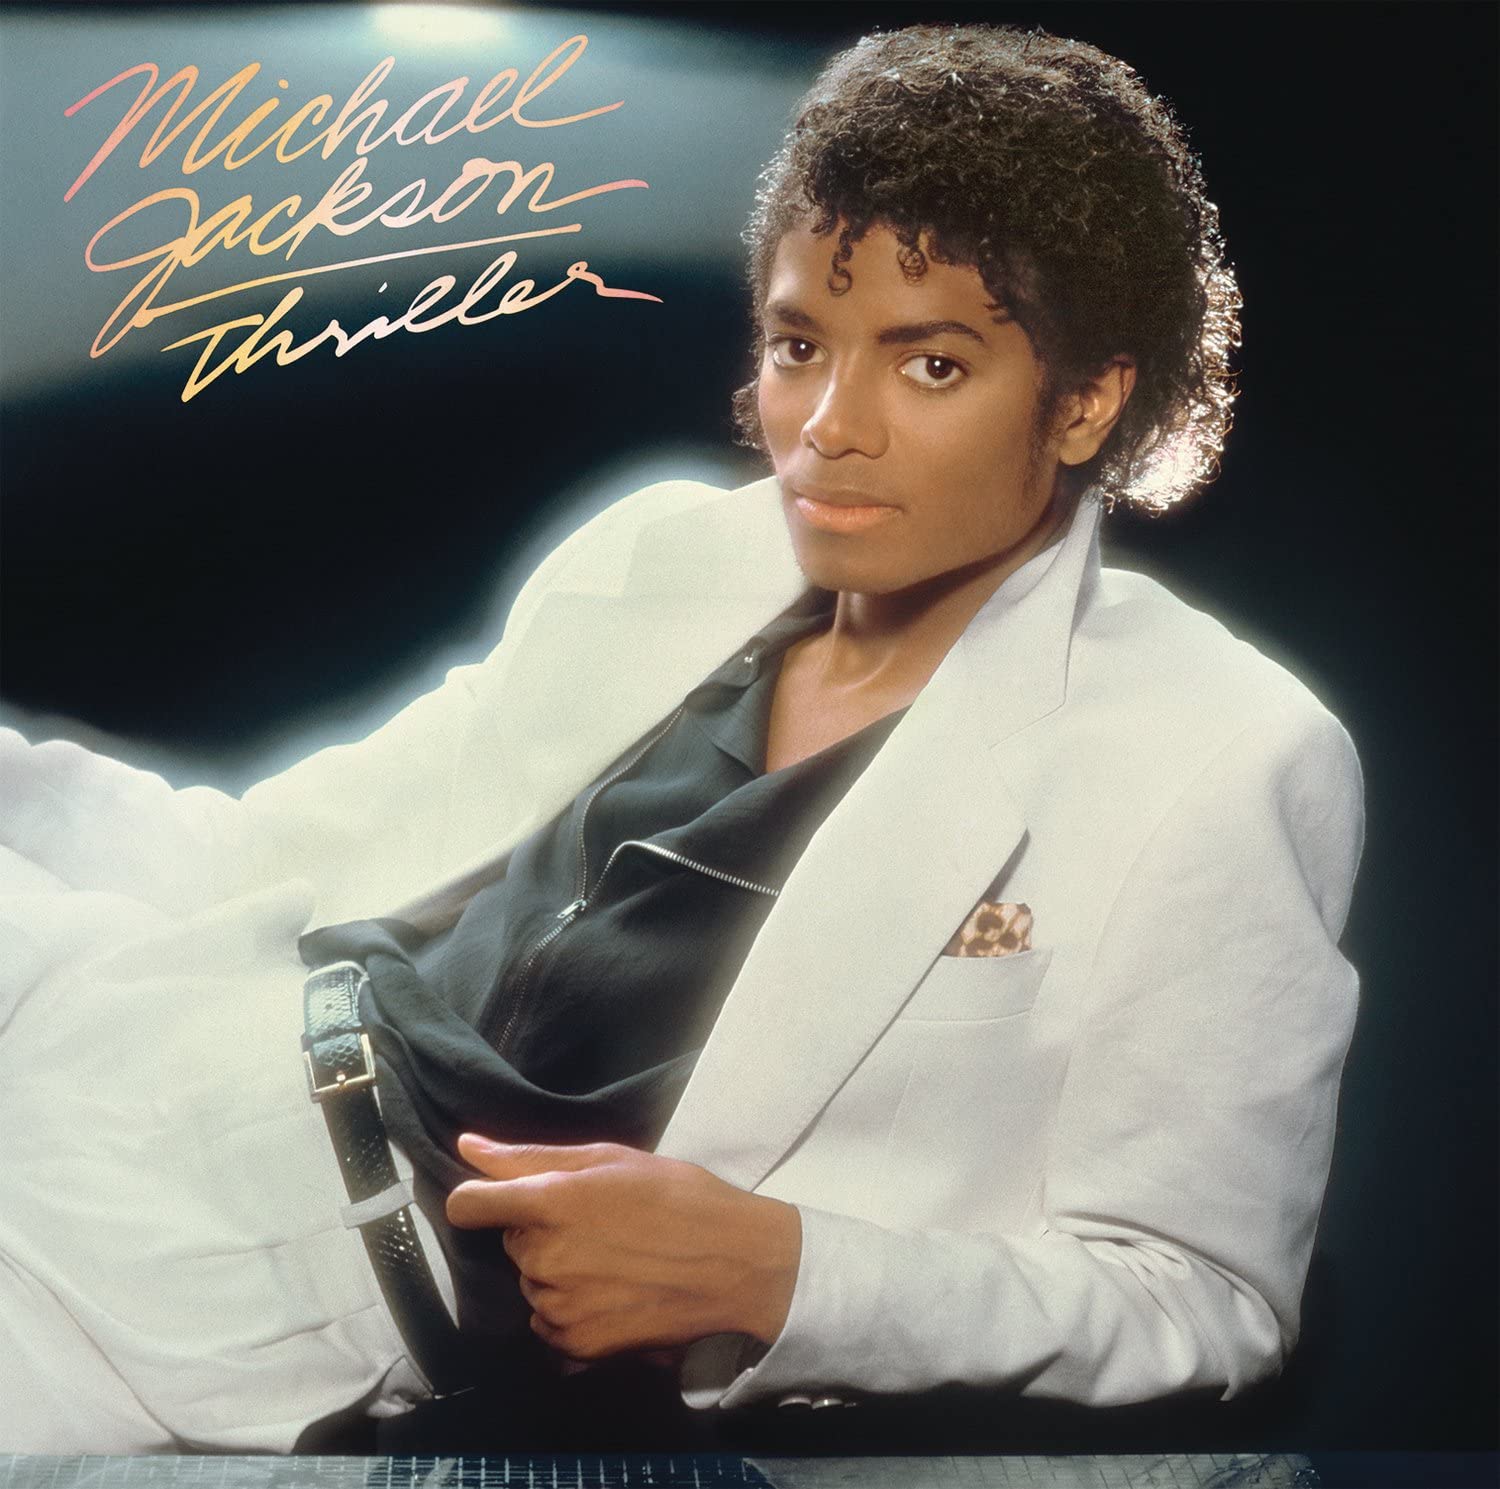 Michaell Jackson - Thriller